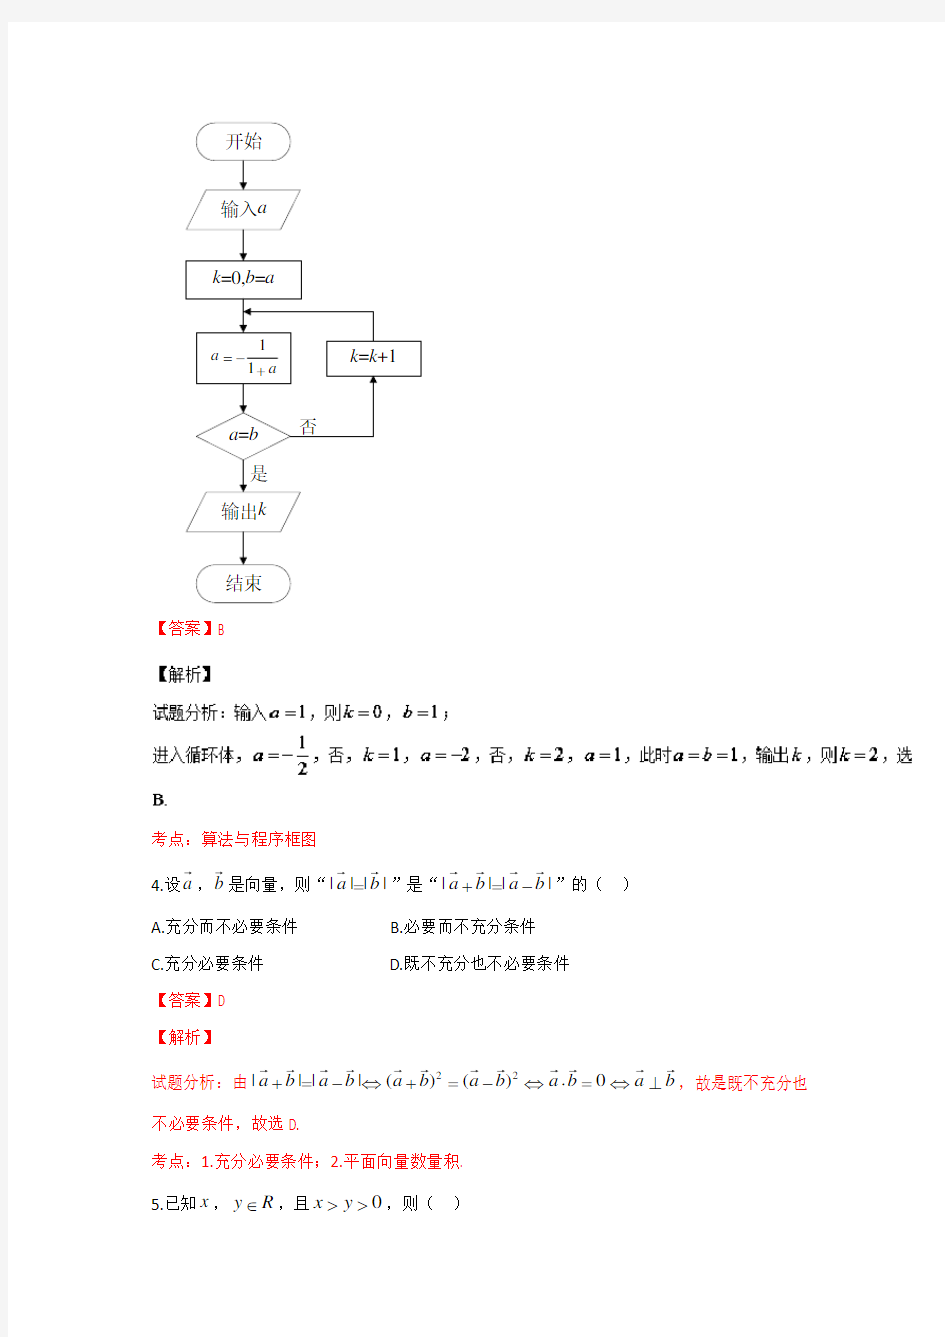 2016年高考真题——理科数学(北京卷)正式版 Word版含解析